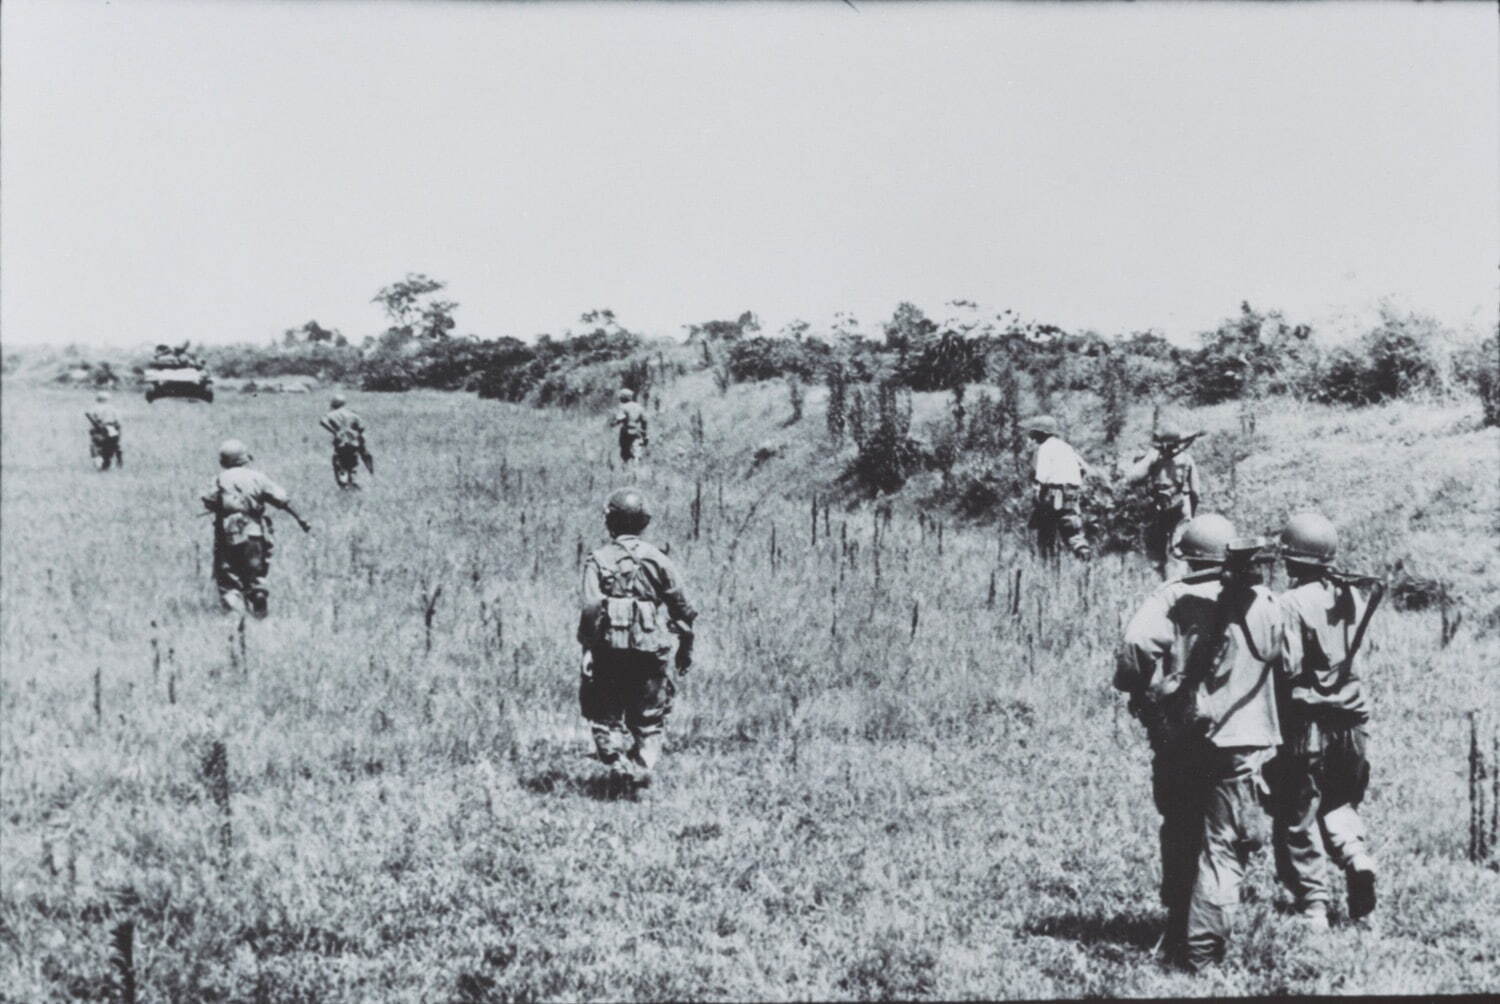 ロバート・キャパ 《ナムディンからタイビンへの道、キャパが地雷を踏む直前に撮った最後の写真、ベトナム》
1954年5月25日 東京富士美術館蔵